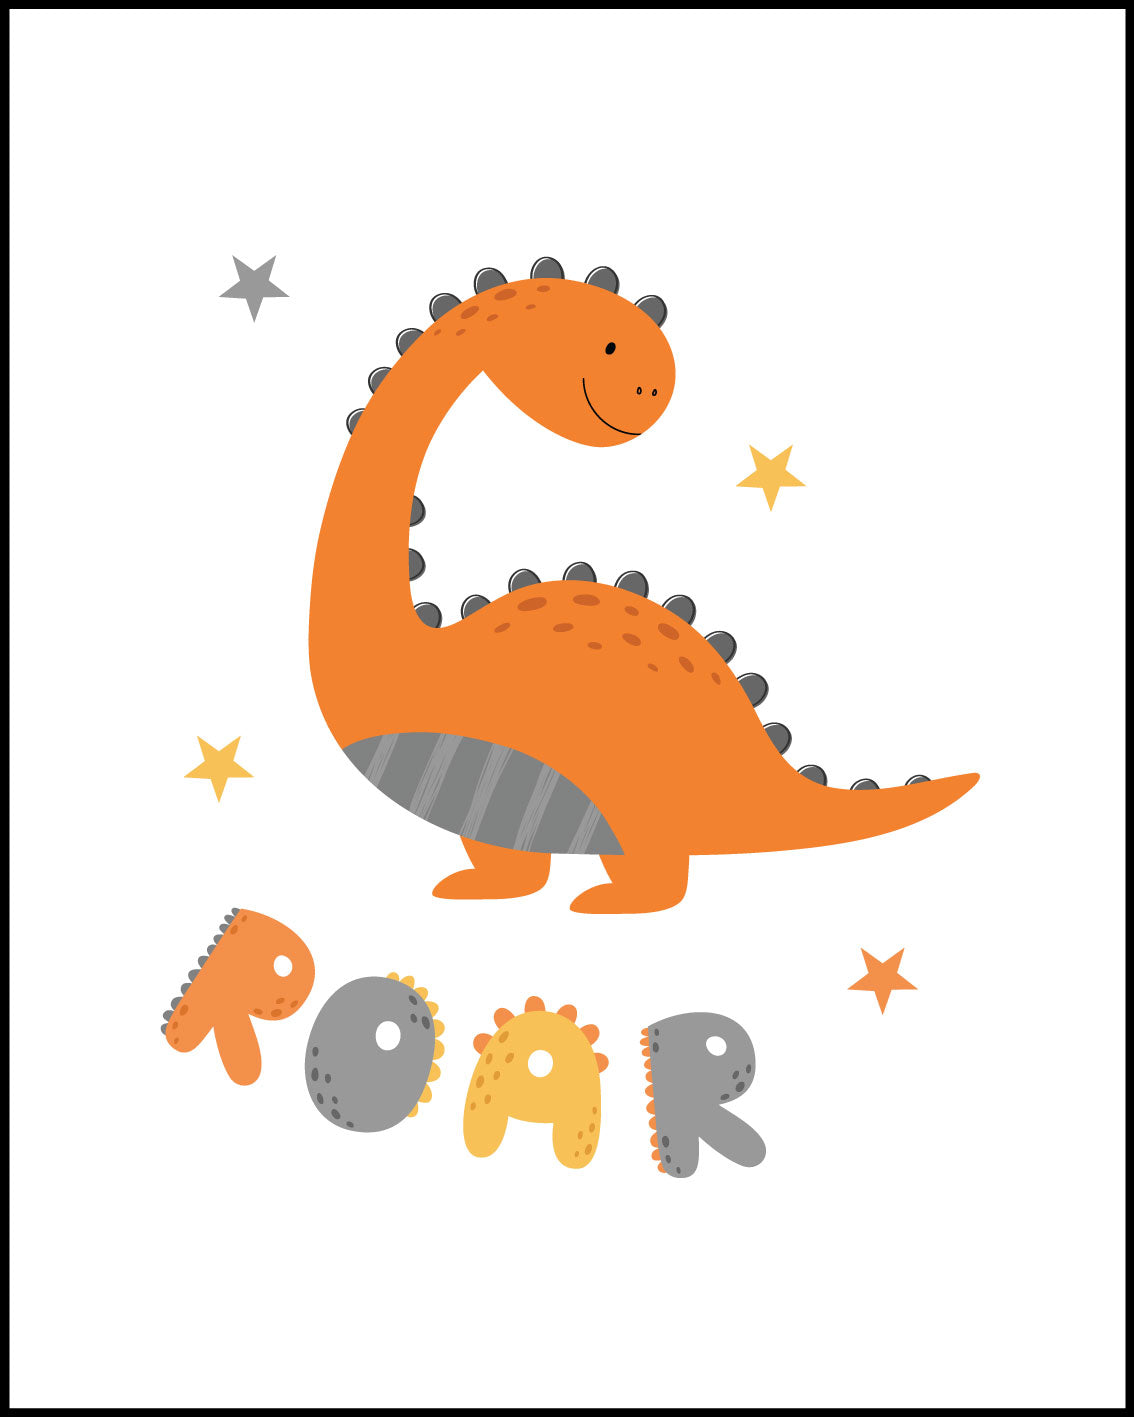 Dino roar, Be kind, Dream big, set of 3 nursery Posters